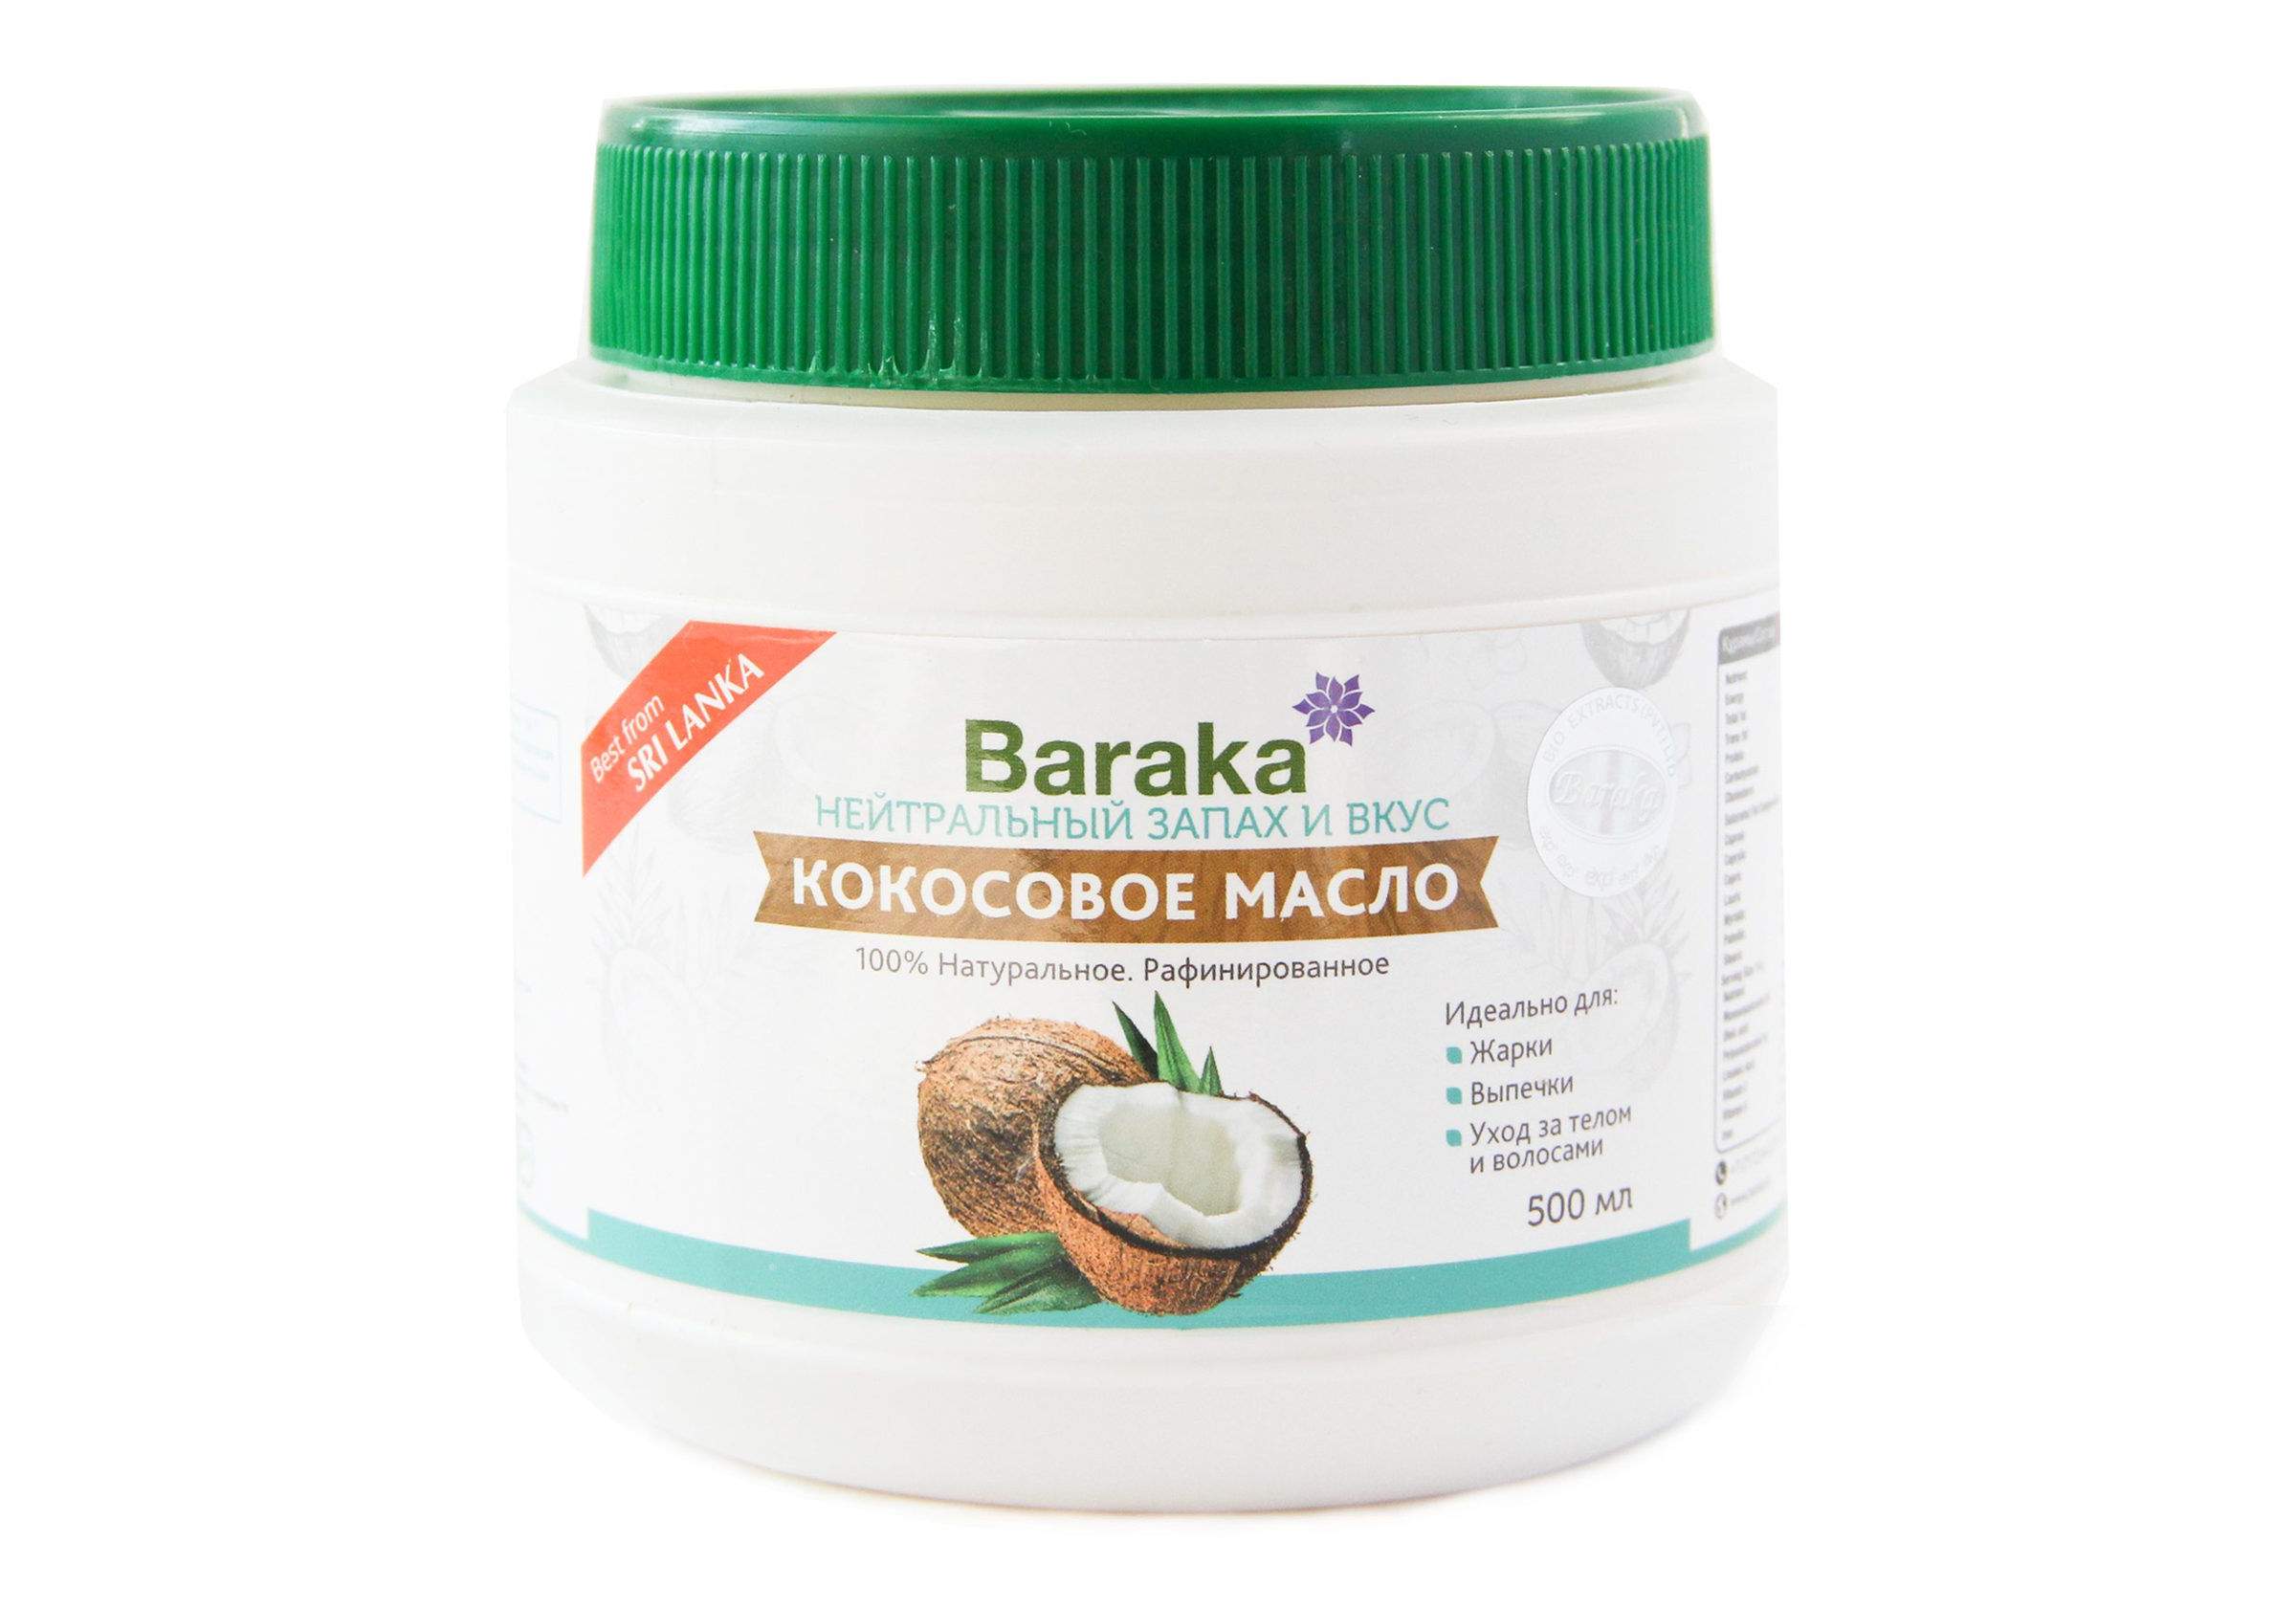 Baraka Масло кокосовое рафинированное, 500 мл